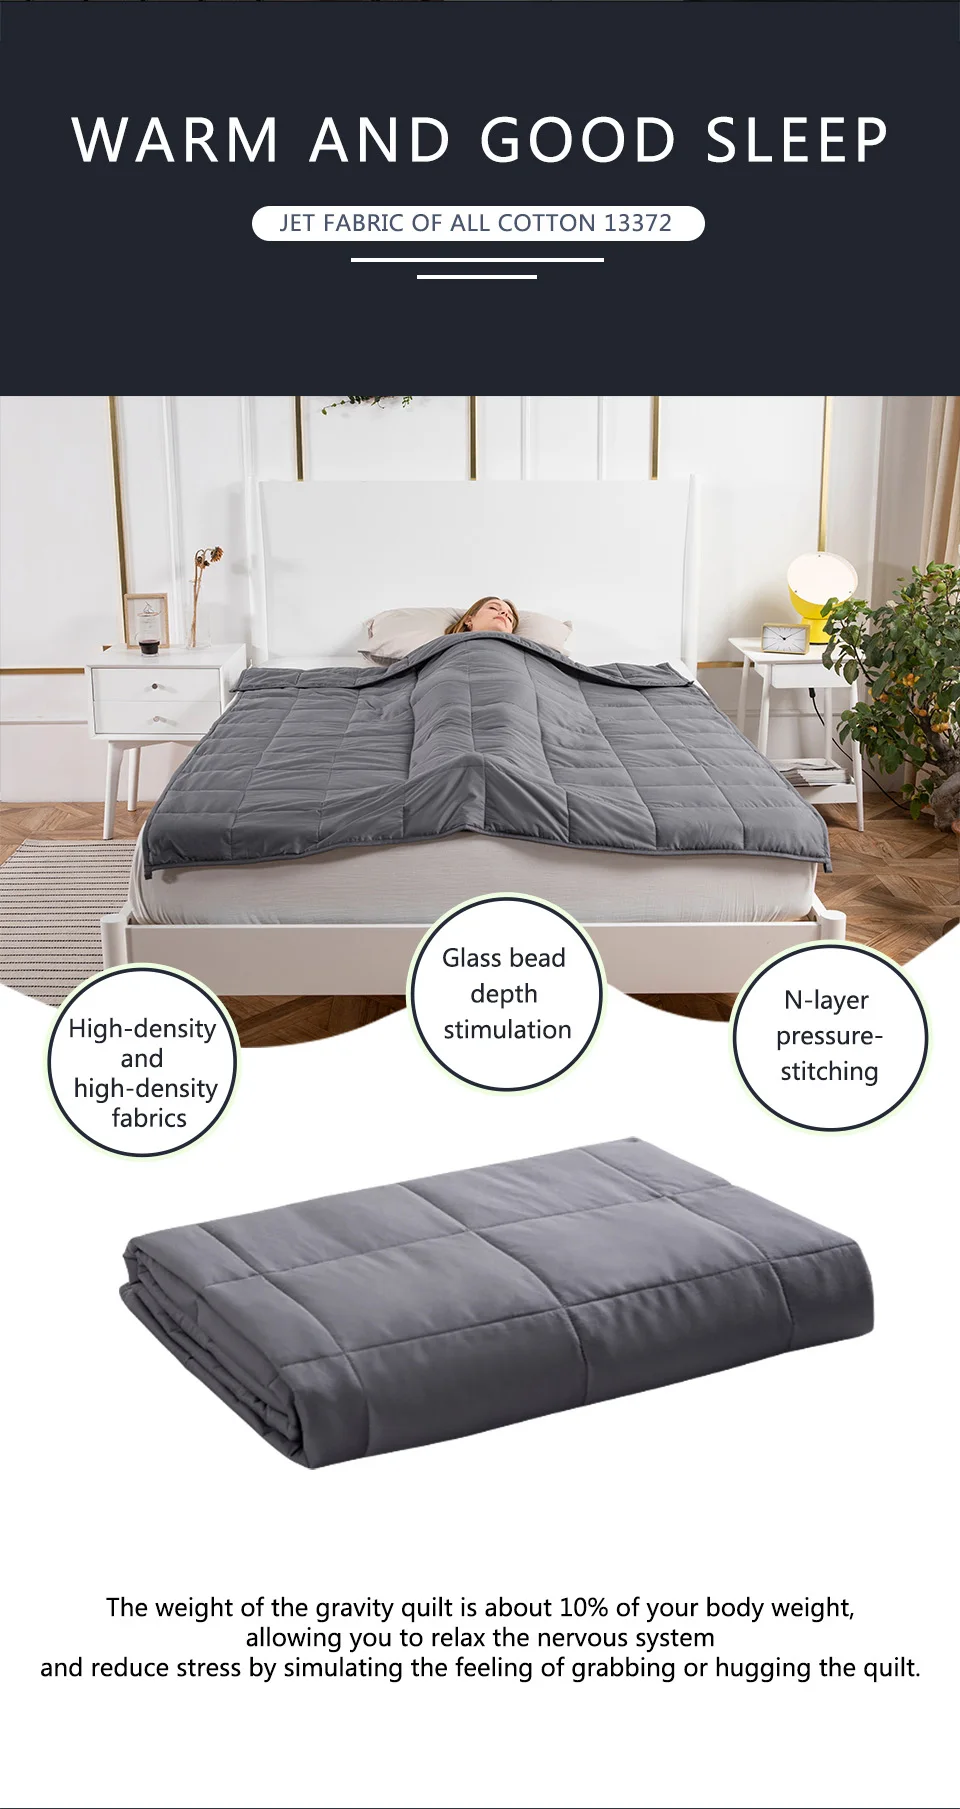 Помощь давление взвешенное одеяло для аутизм, тревожность взвешенное одеяло для взрослых гравитационное одеяло s декомпрессия сна взвешенное одеяло